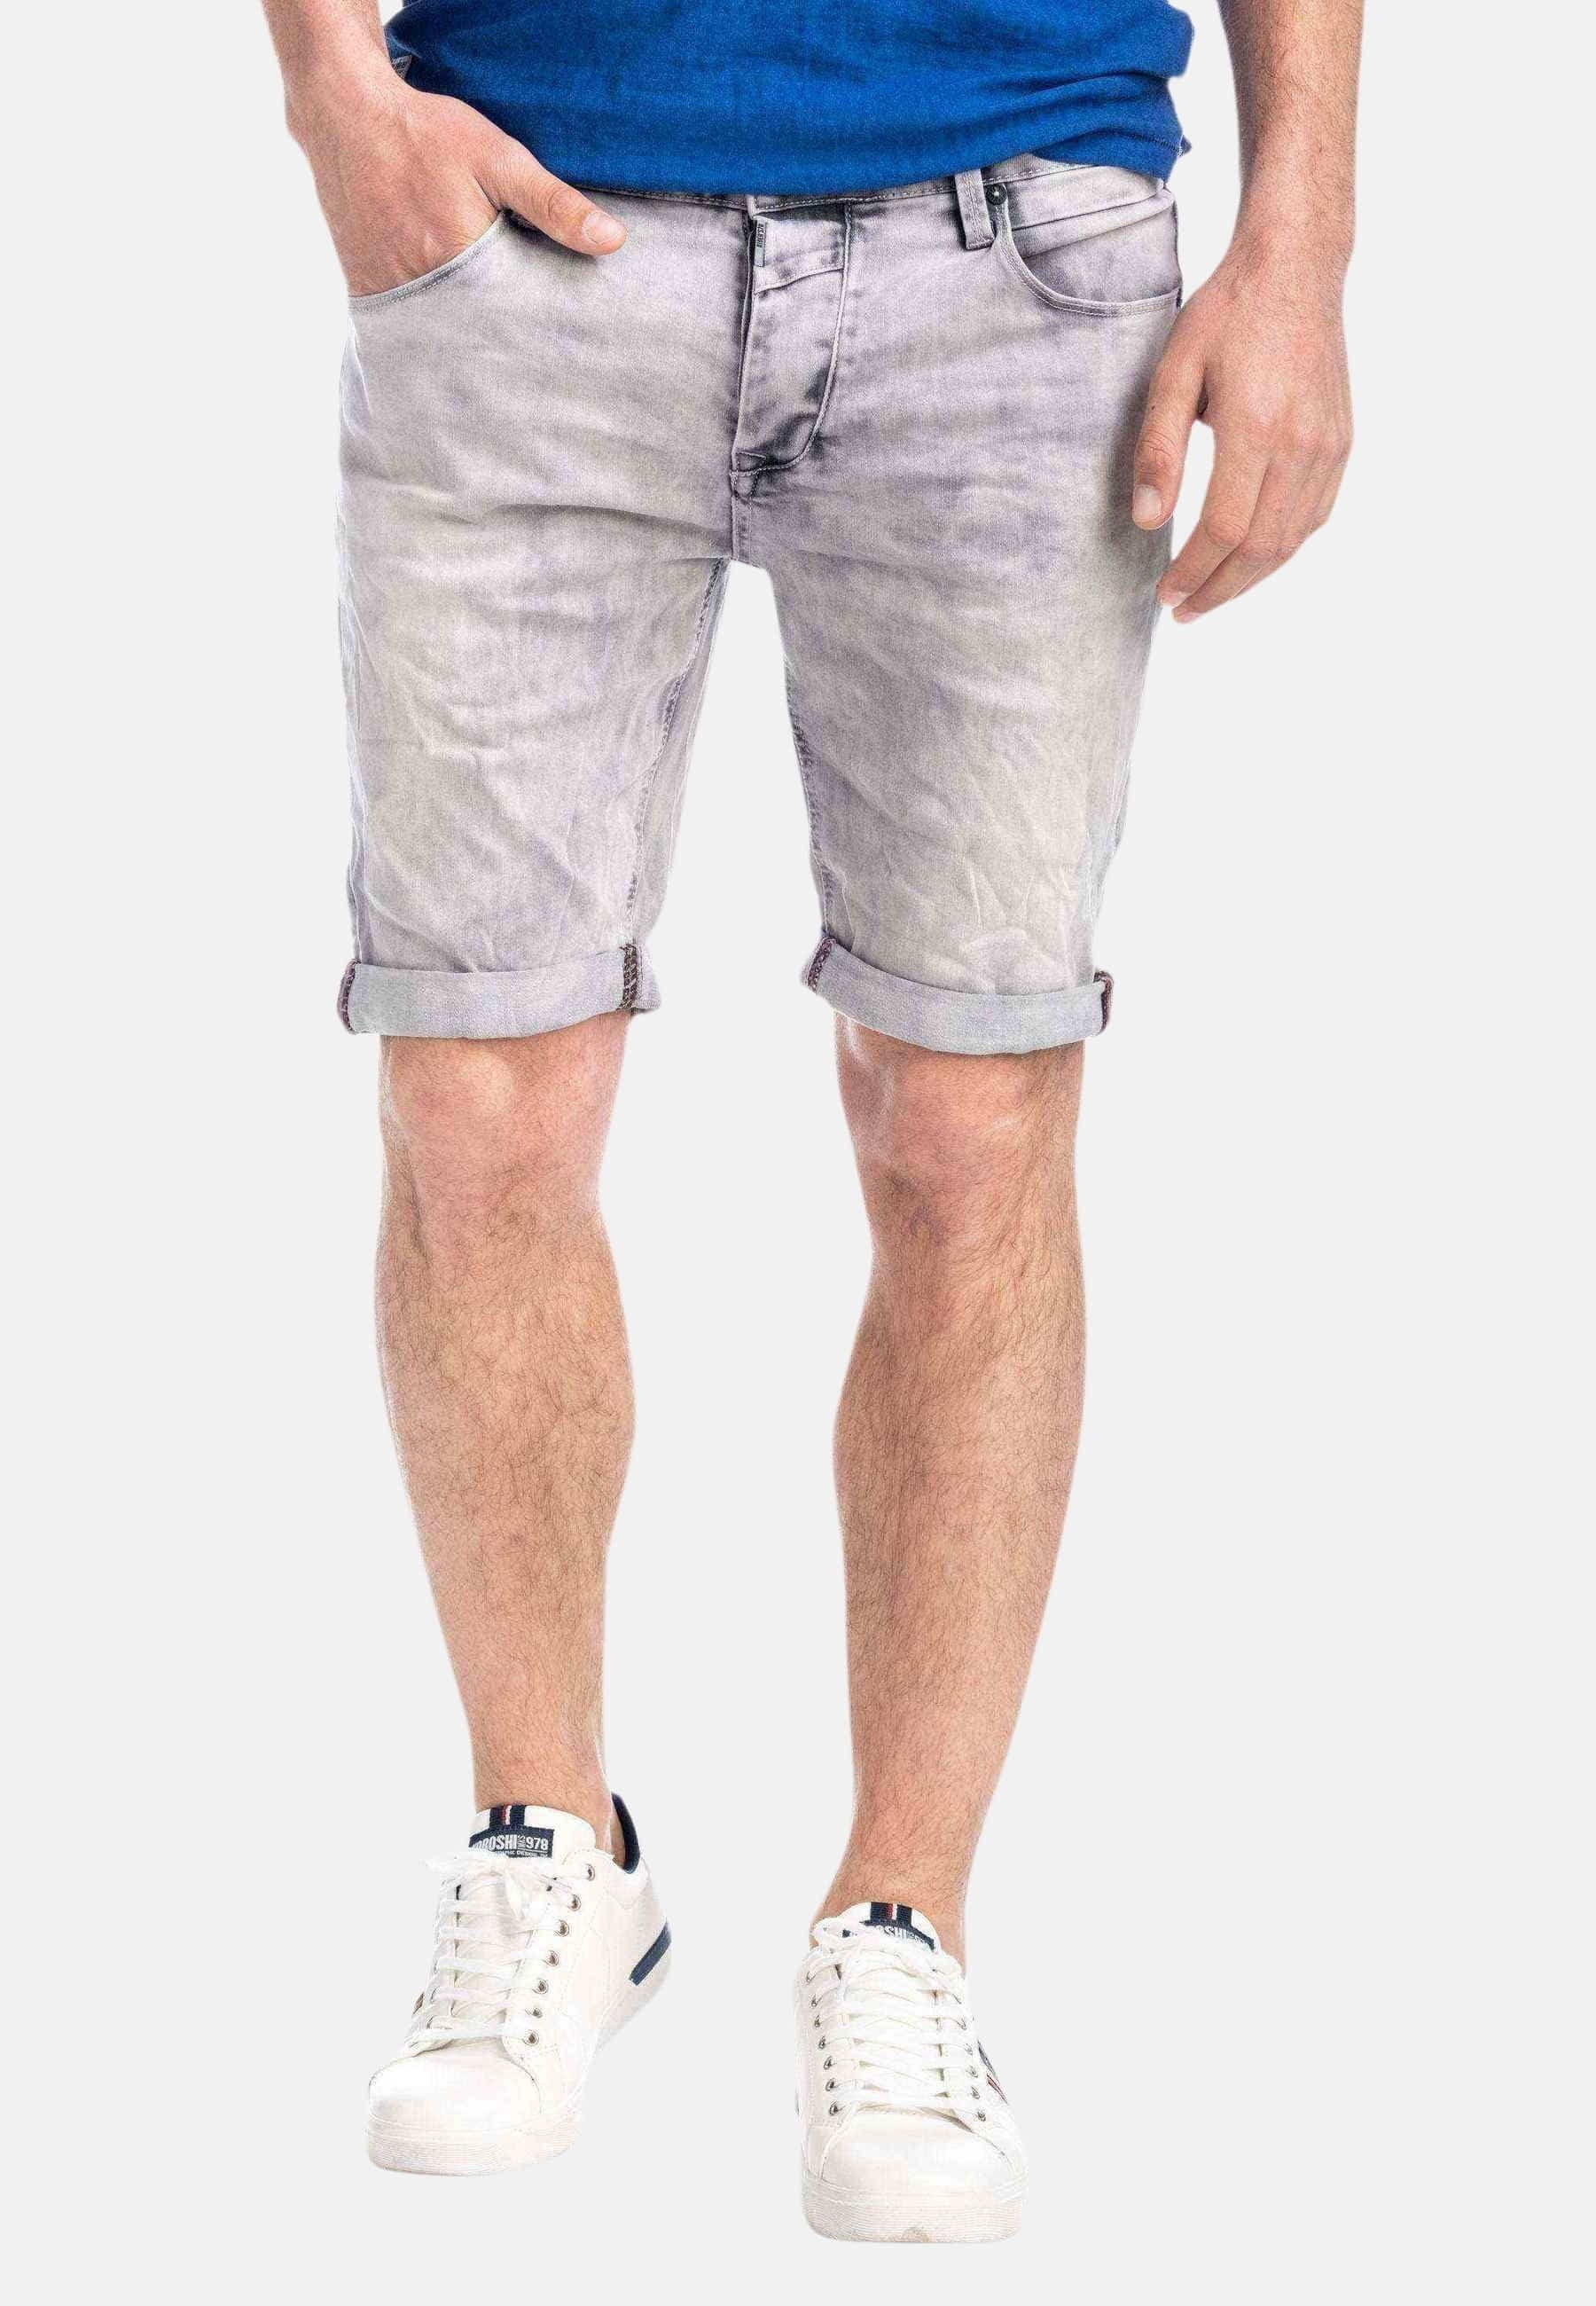 Pantalón corto de Algodón slim fit color Gris para Hombre